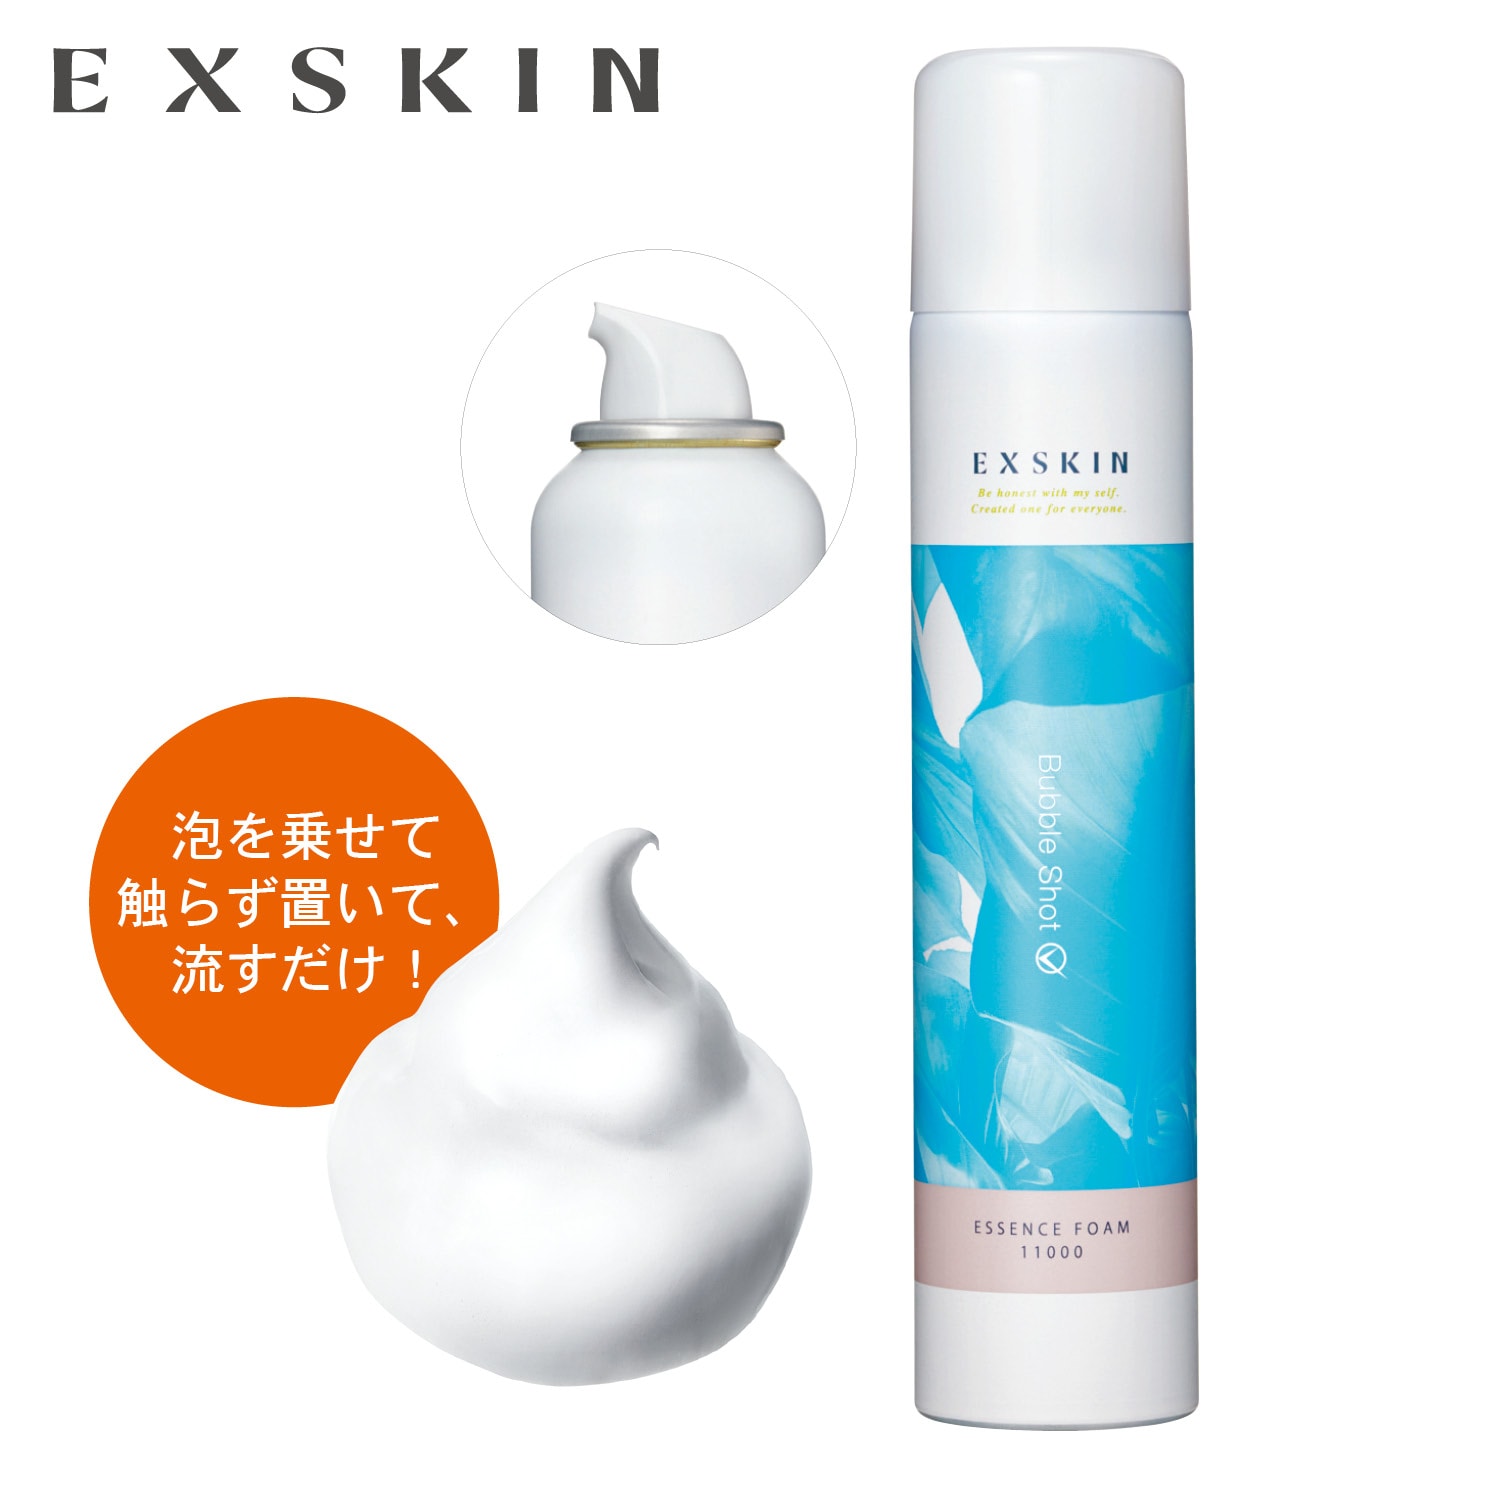 【エクスキン/EXSKIN】エクスキン バブルショット エッセンスフォーム (洗顔料)画像